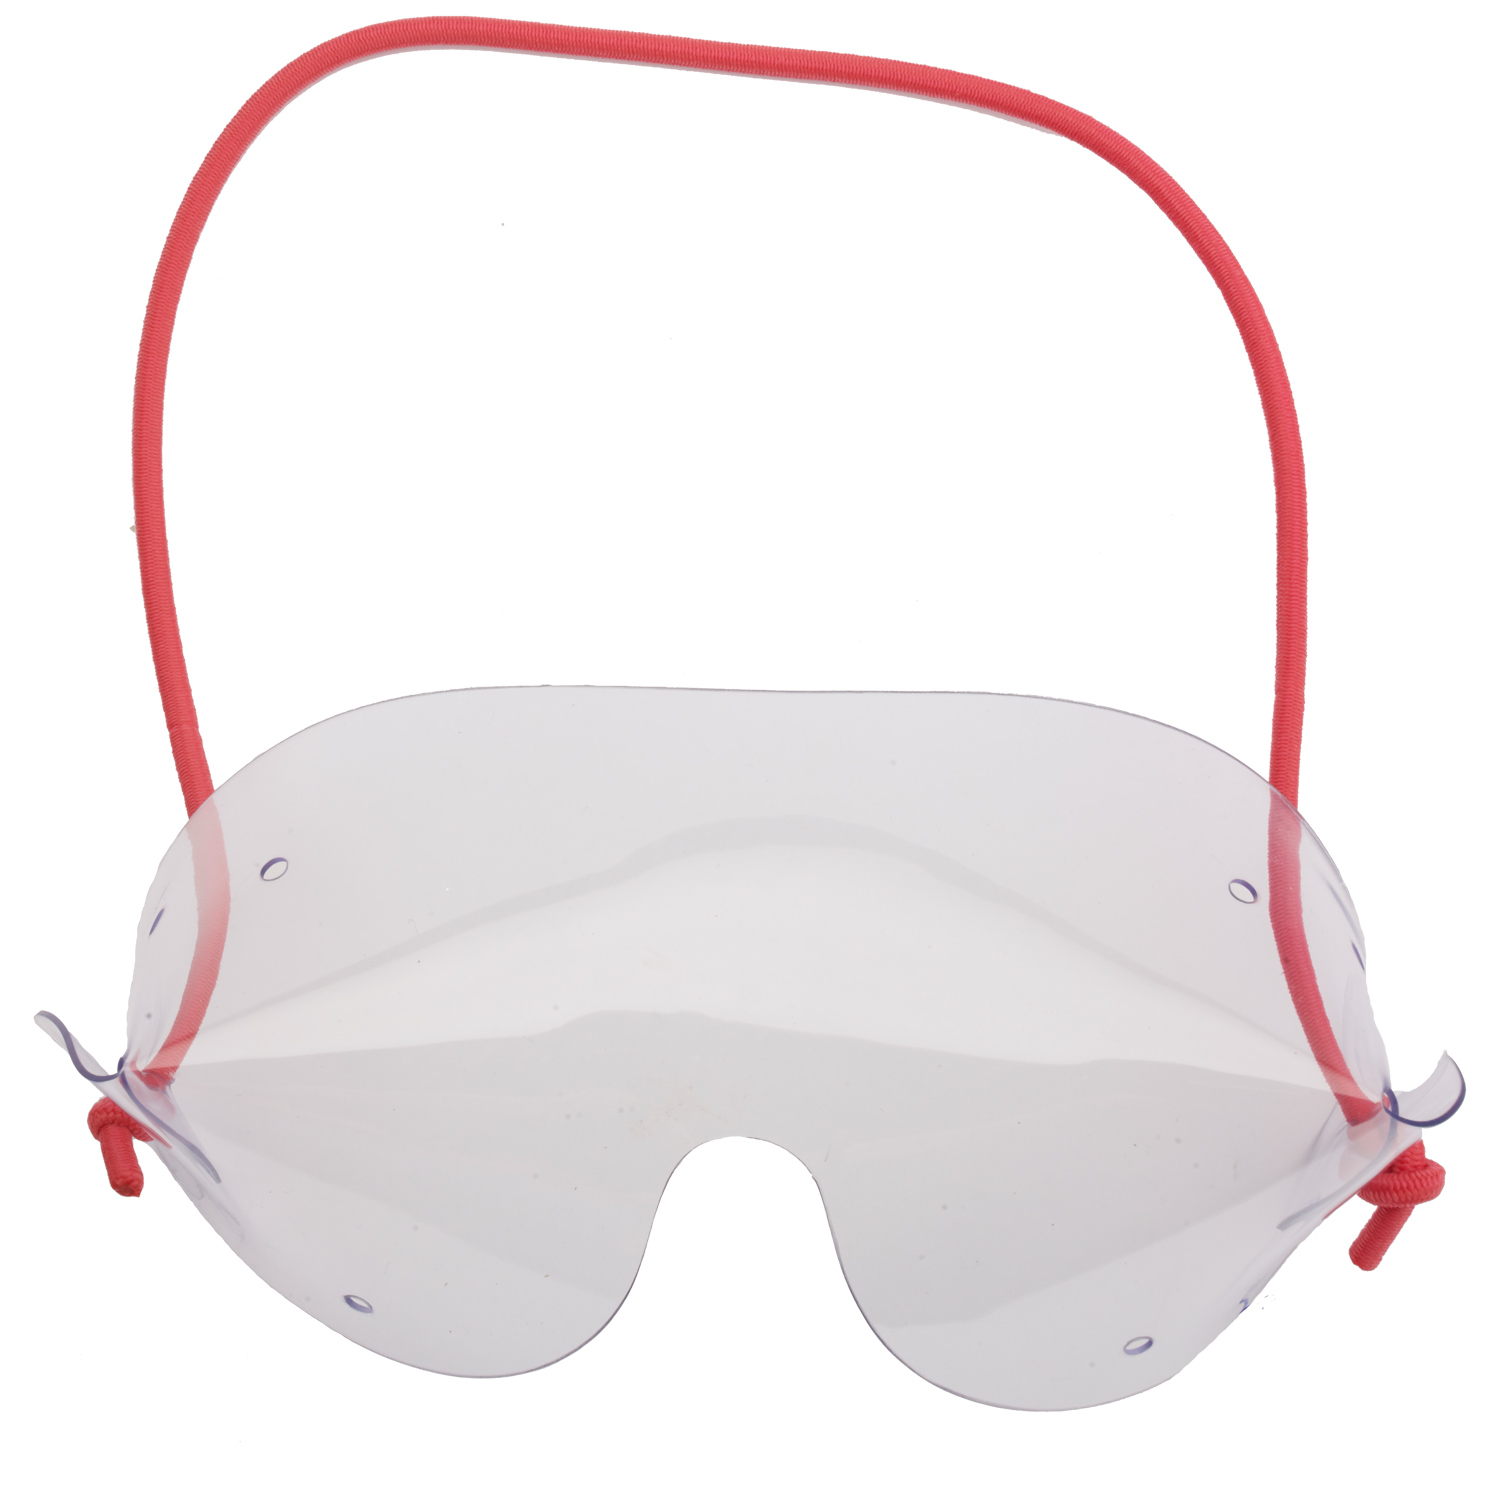 Lunettes de saut Flexvision pour les porteurs de lunettes